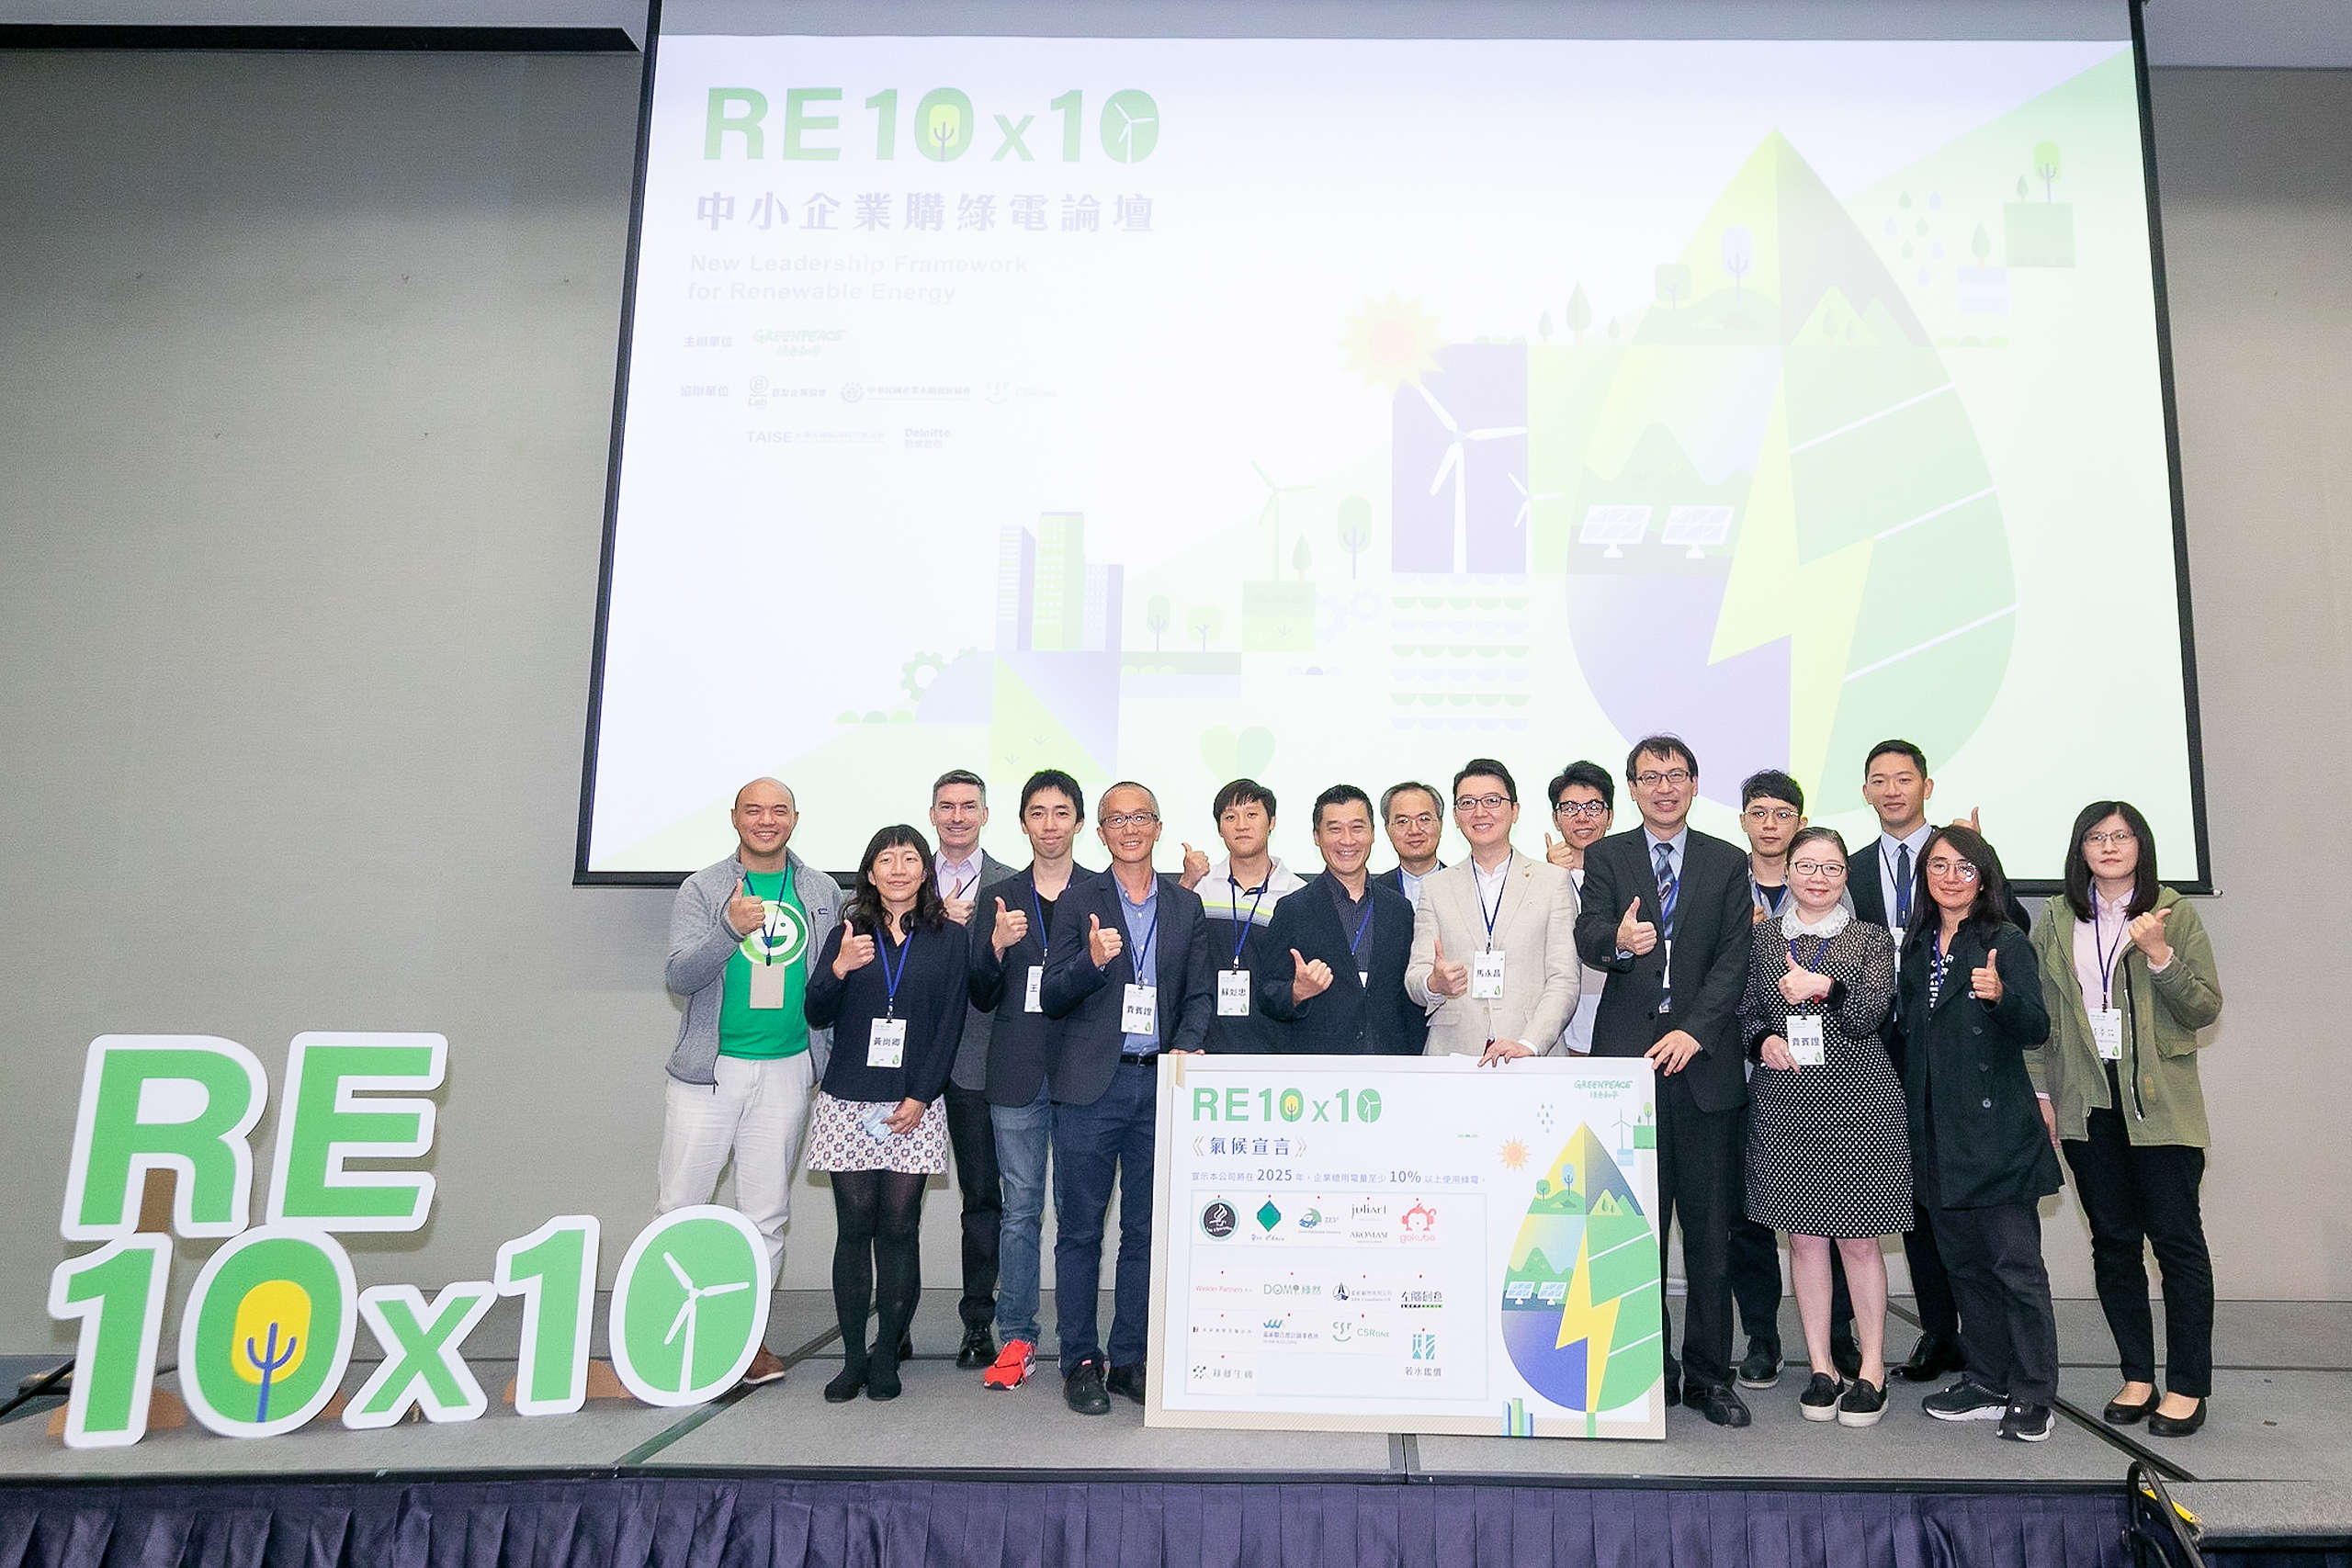 綠色和平舉辦RE10X10綠電論壇，邀集中小企業主承諾2050年將使用10%以上綠電，以具體行動支持能源轉型。